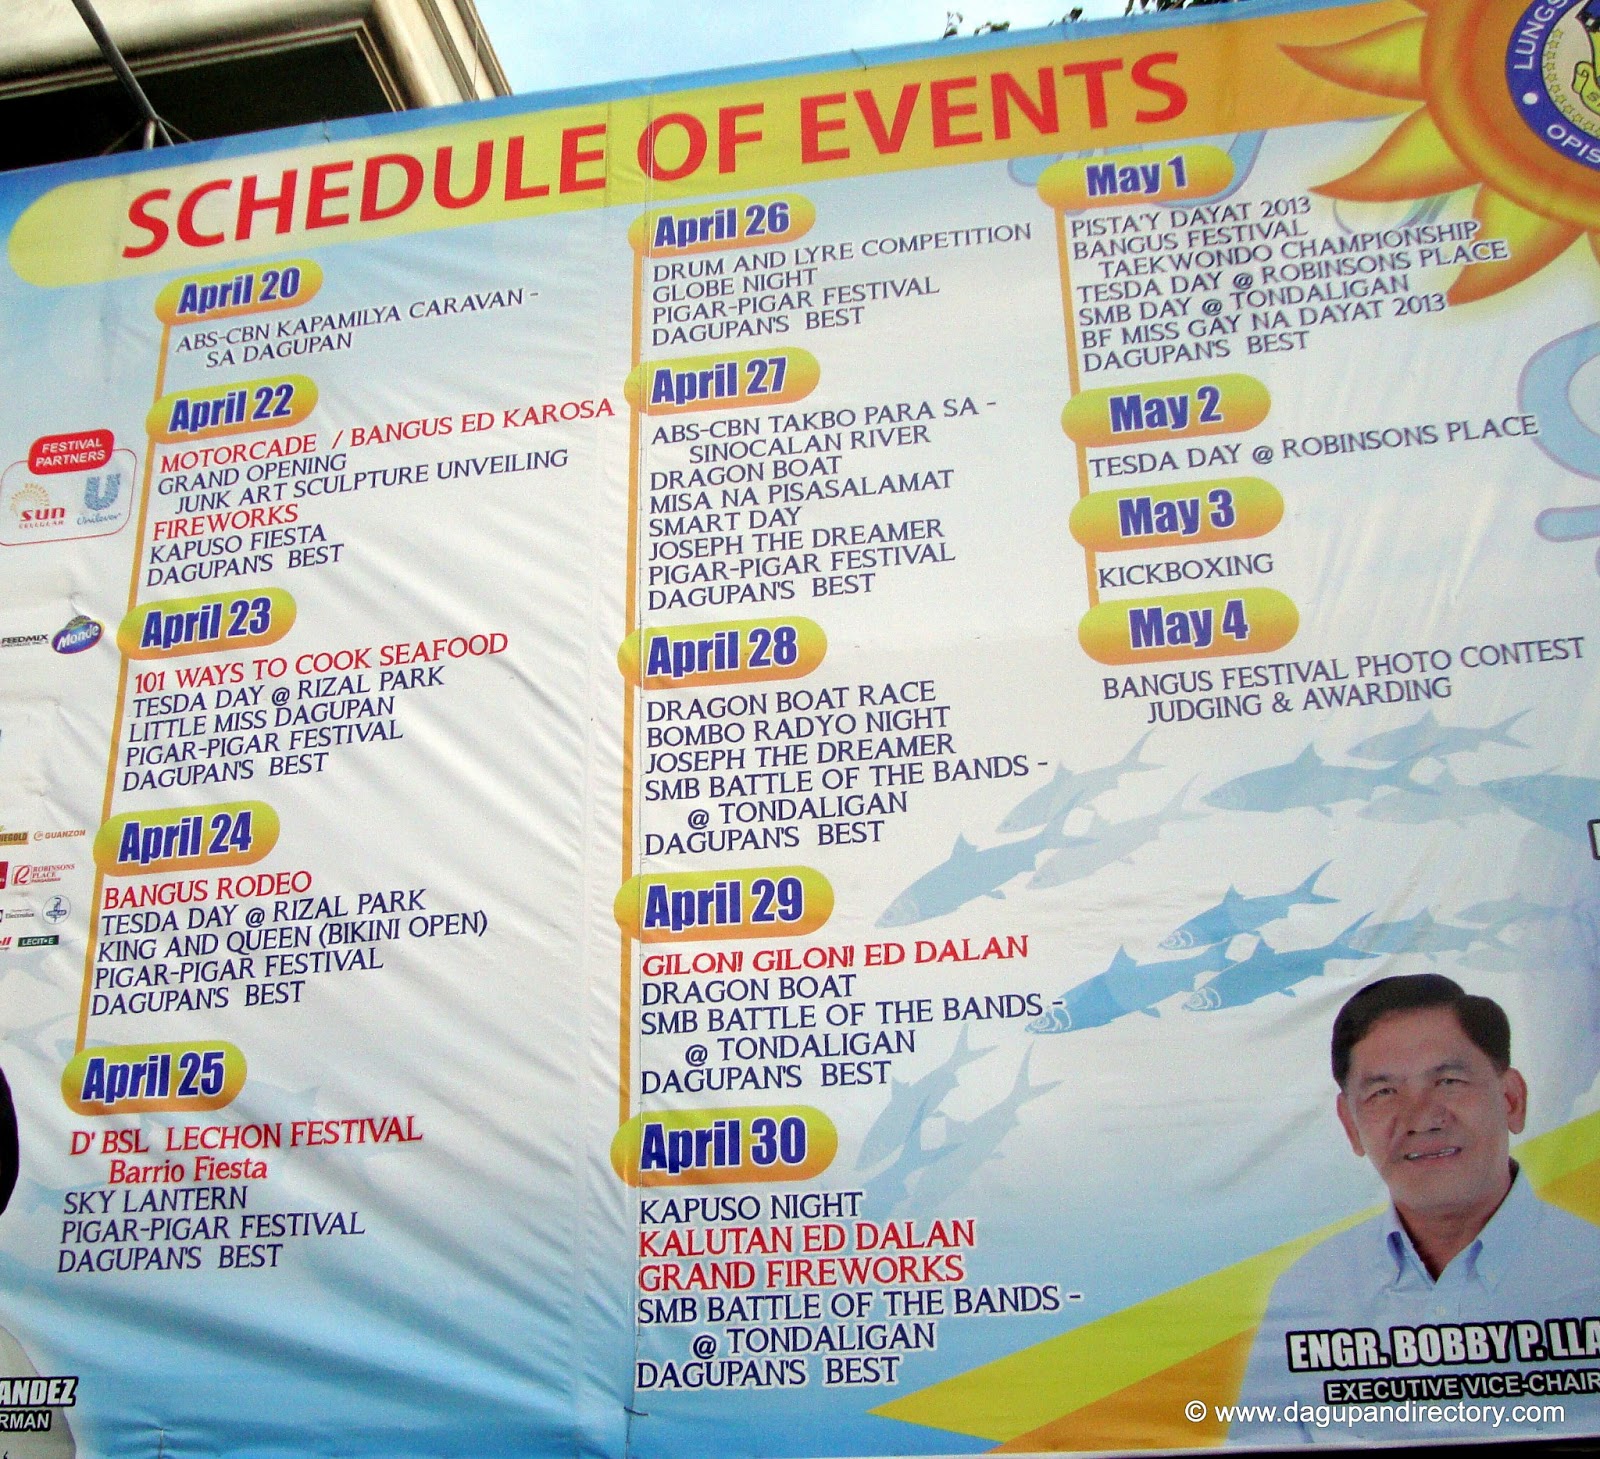 Dagupan City Bangus Festival 2013 Schedule of Events